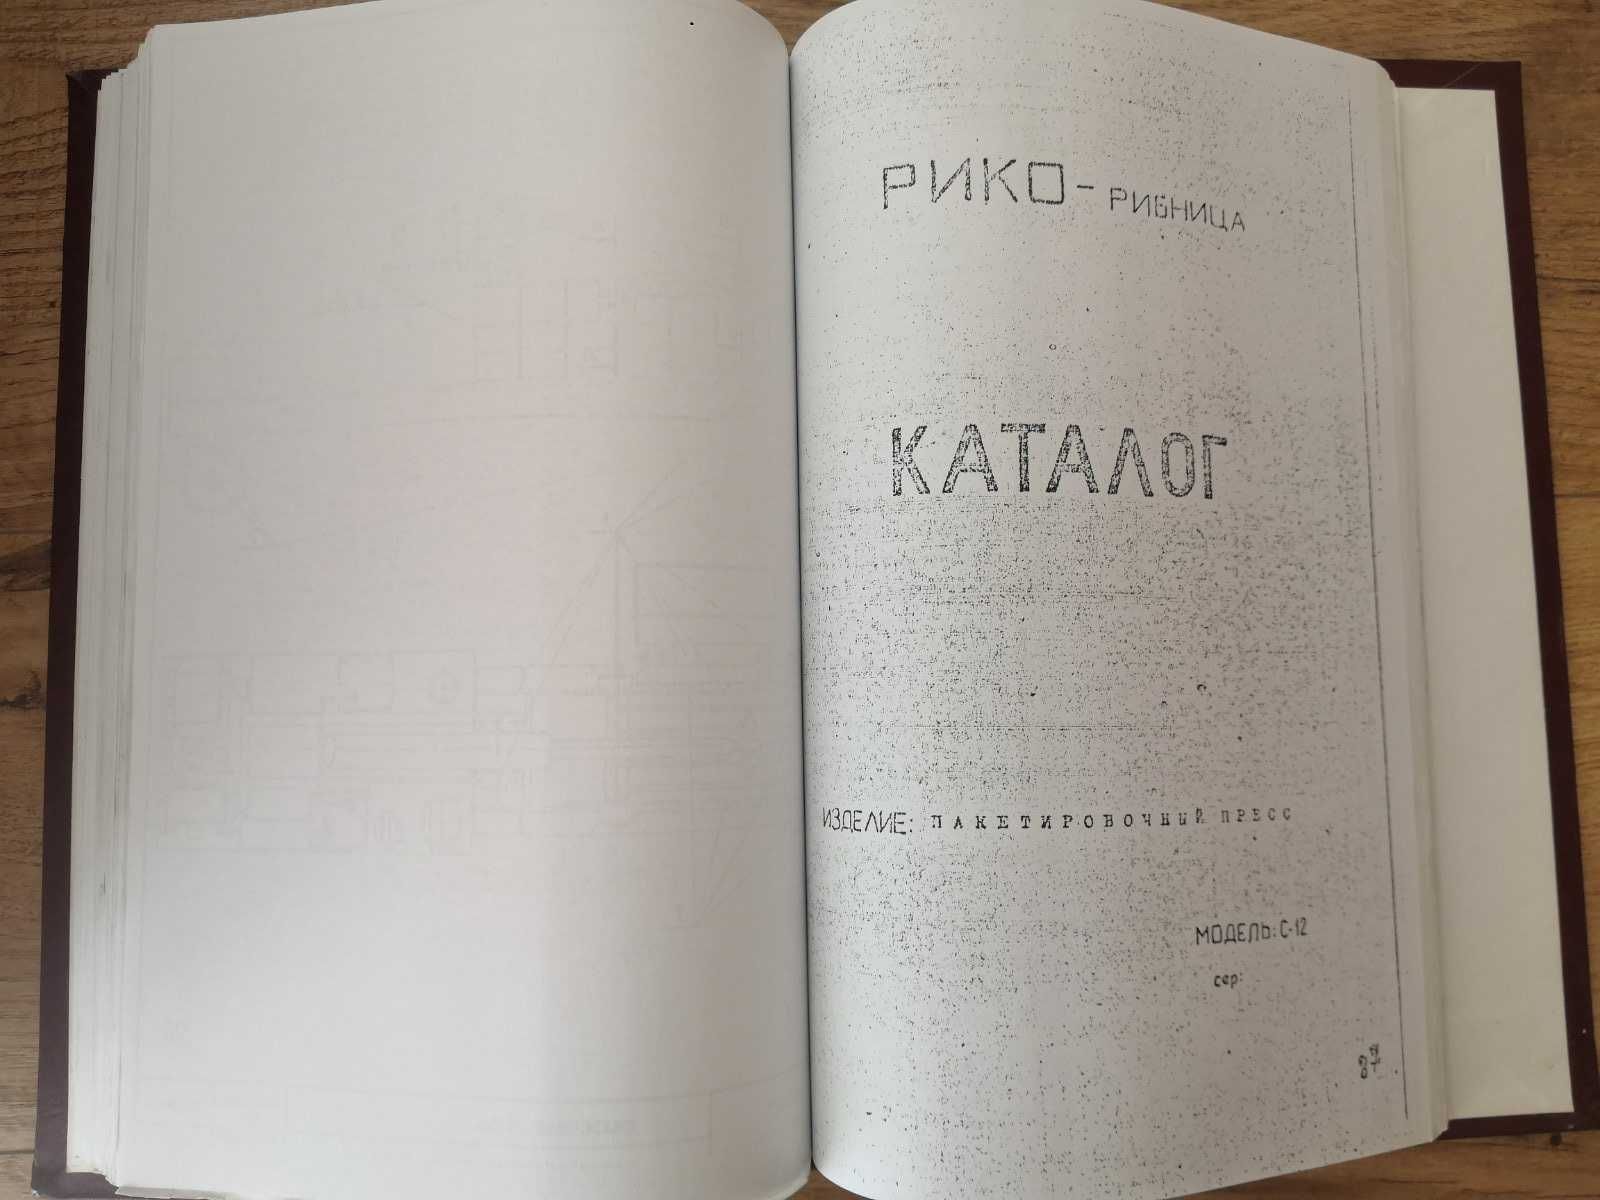 Паспорт (документація) прес пакетувальний RIKO, С-12, 1982р, Югославія